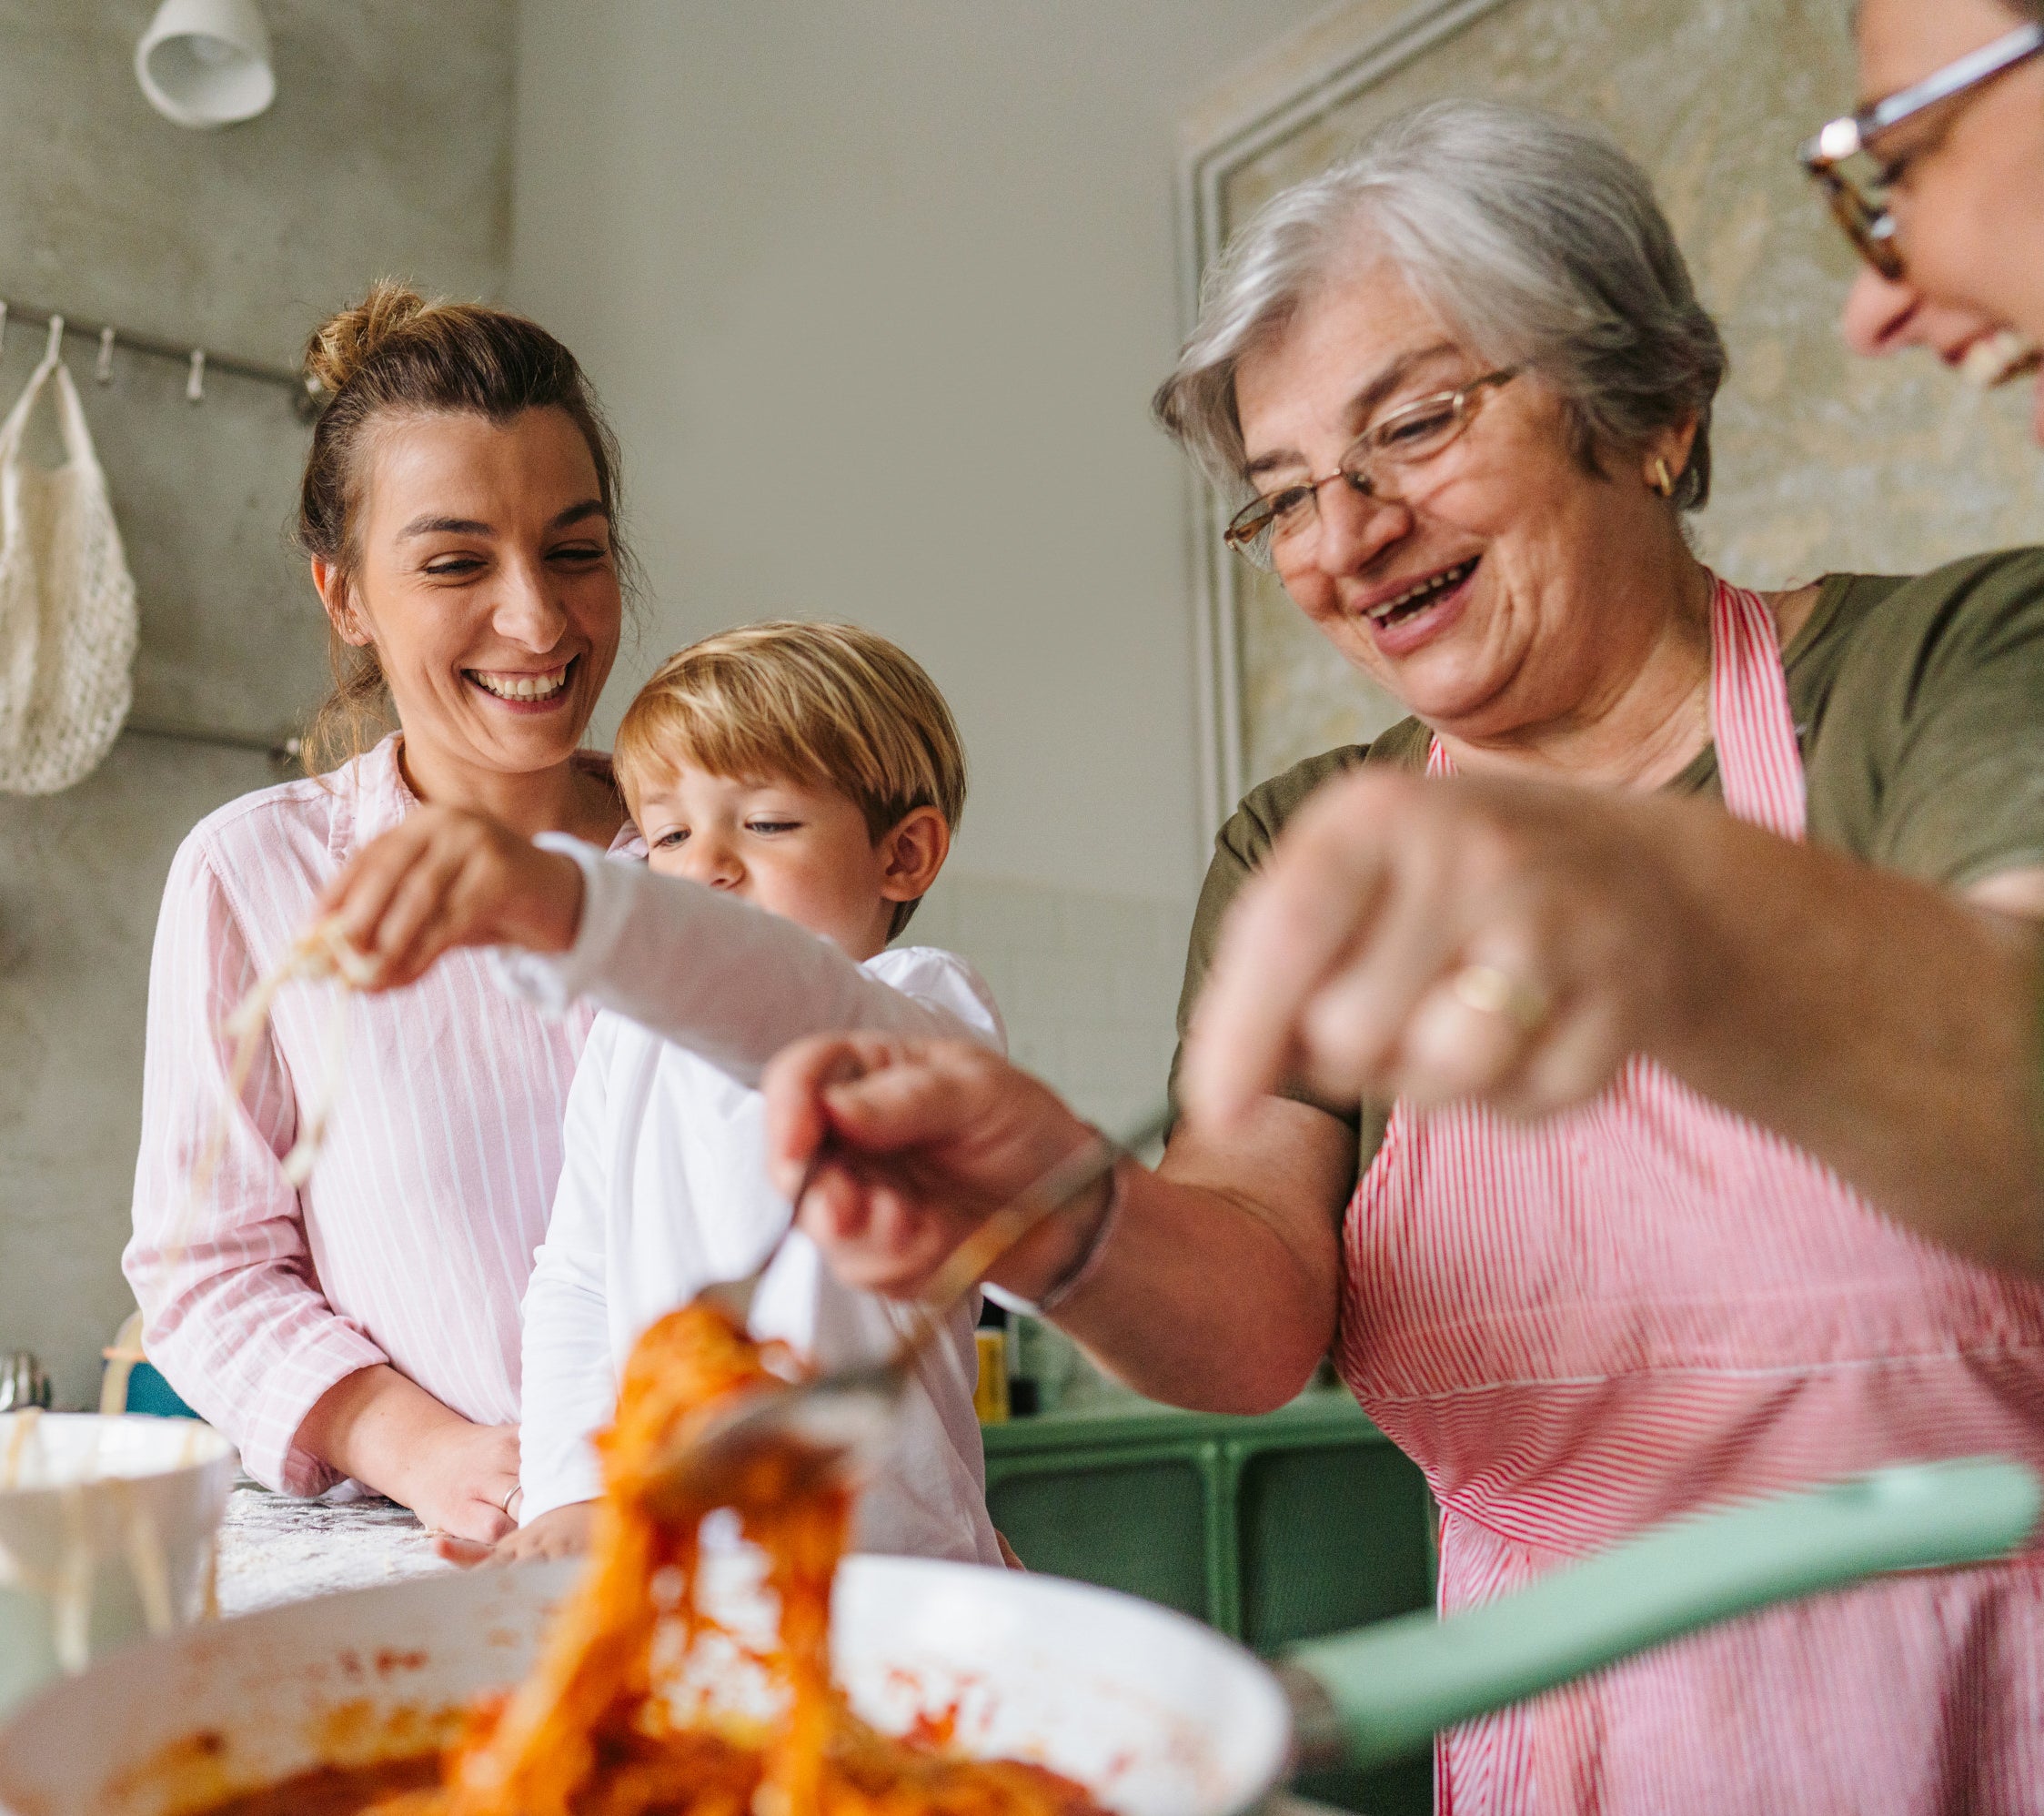 a family in a kitchen preparing spaghetti